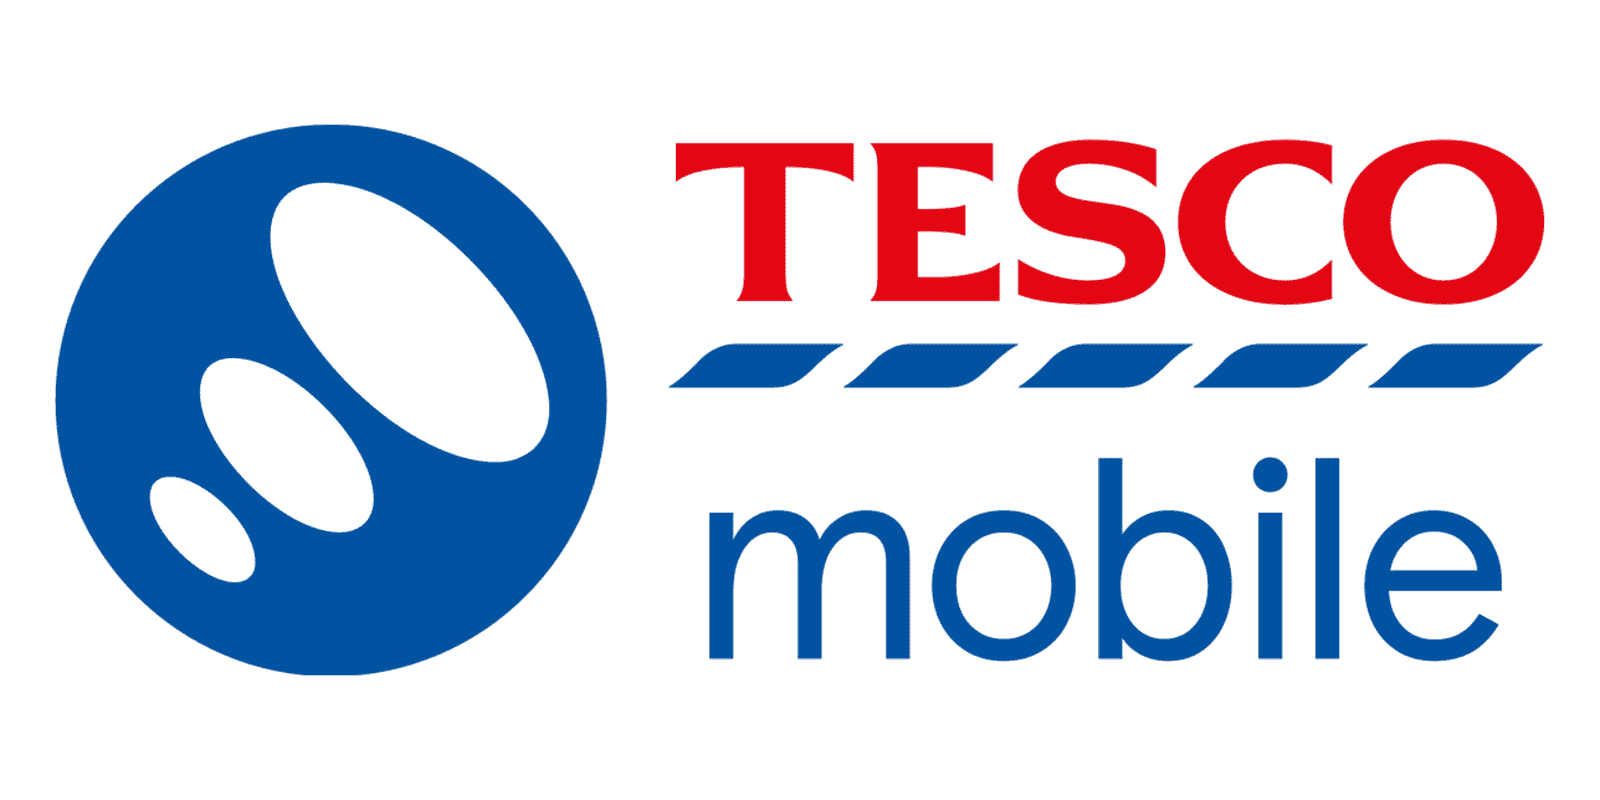 tesco mobile logo